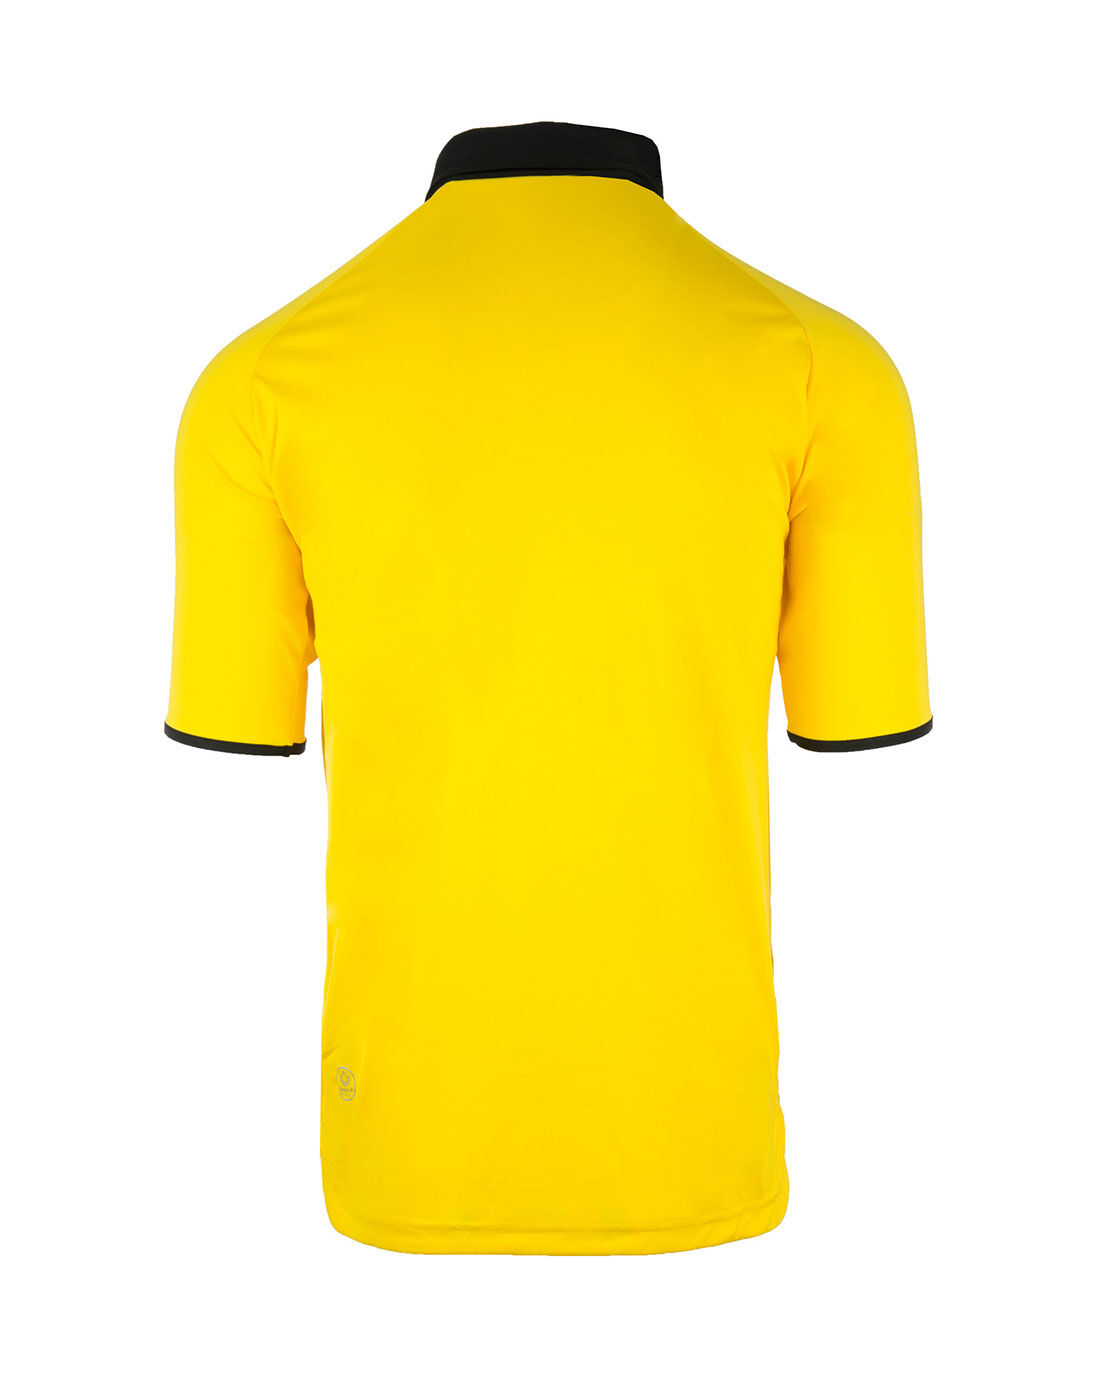 hi res yellow shirt